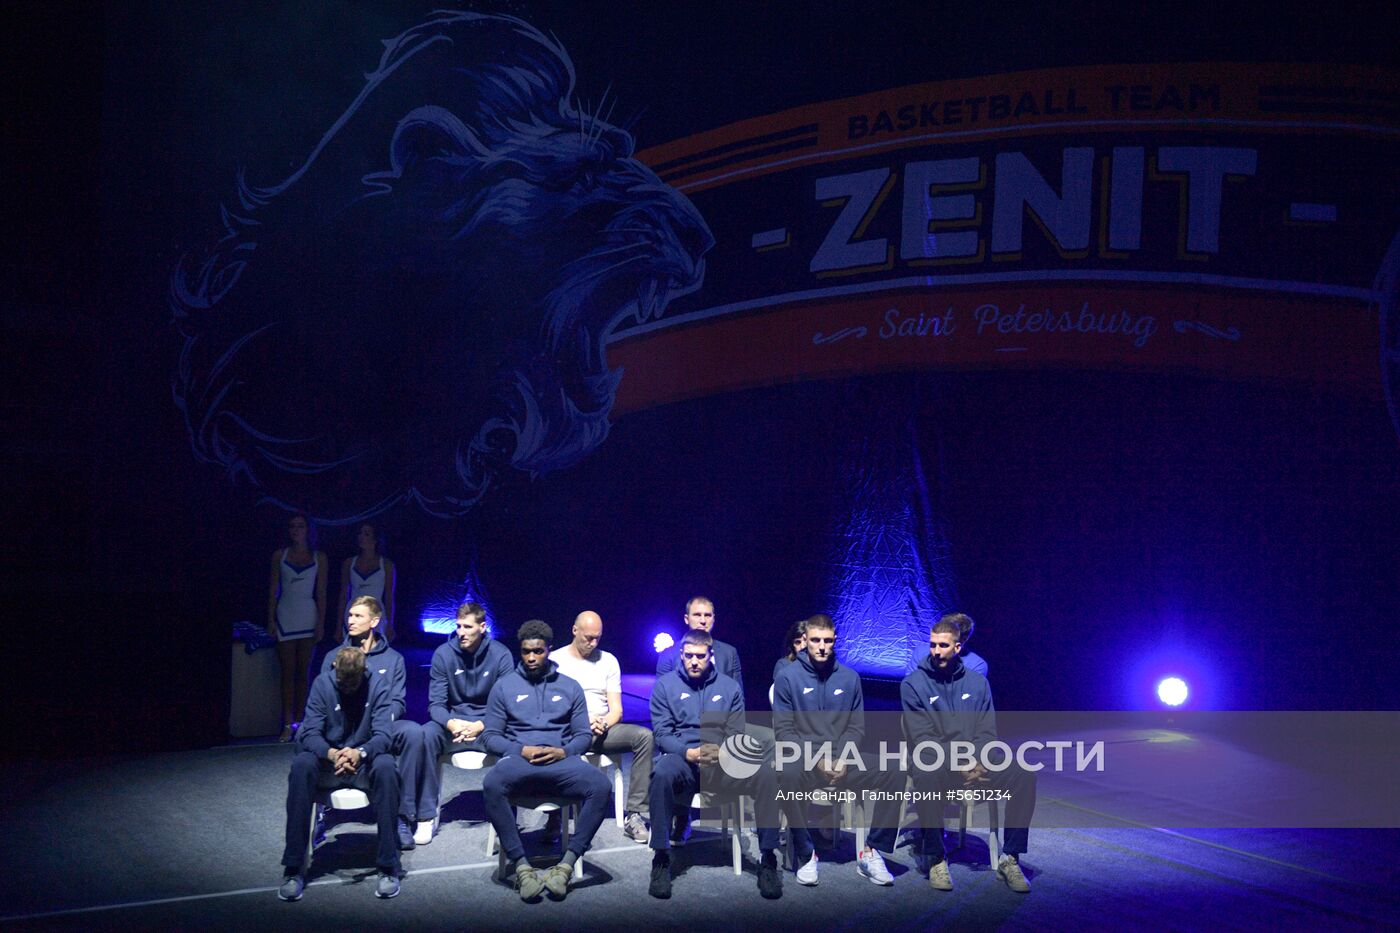 Презентация БК "Зенит" сезона 2018/2019